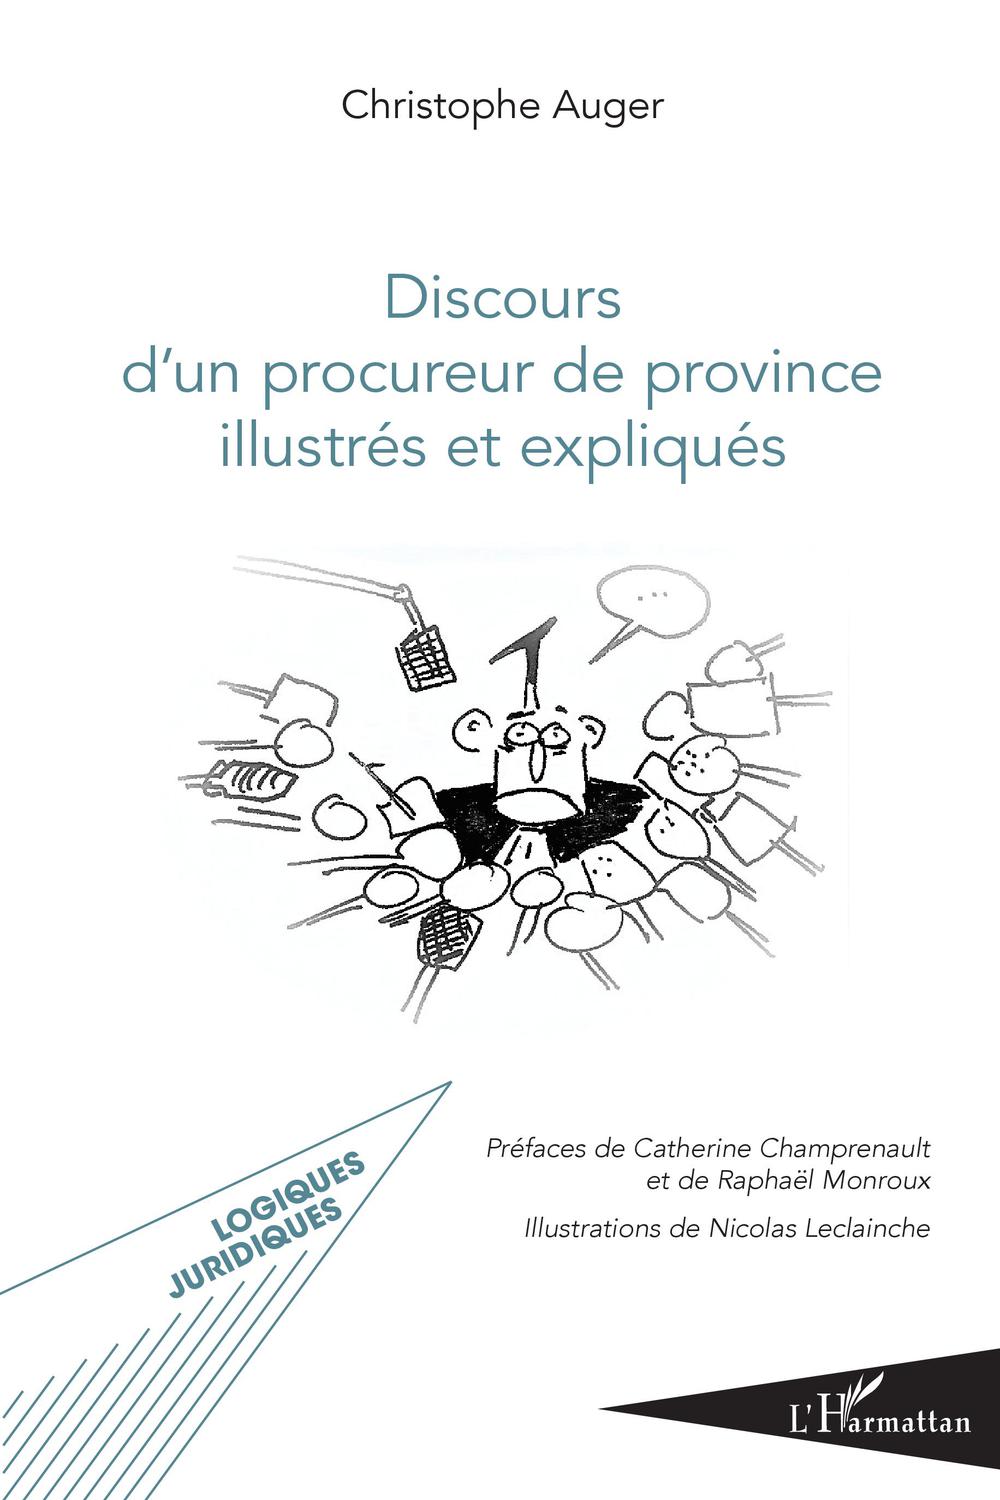 Discours d'un procureur de province illustrés et expliqués - Christophe Auger